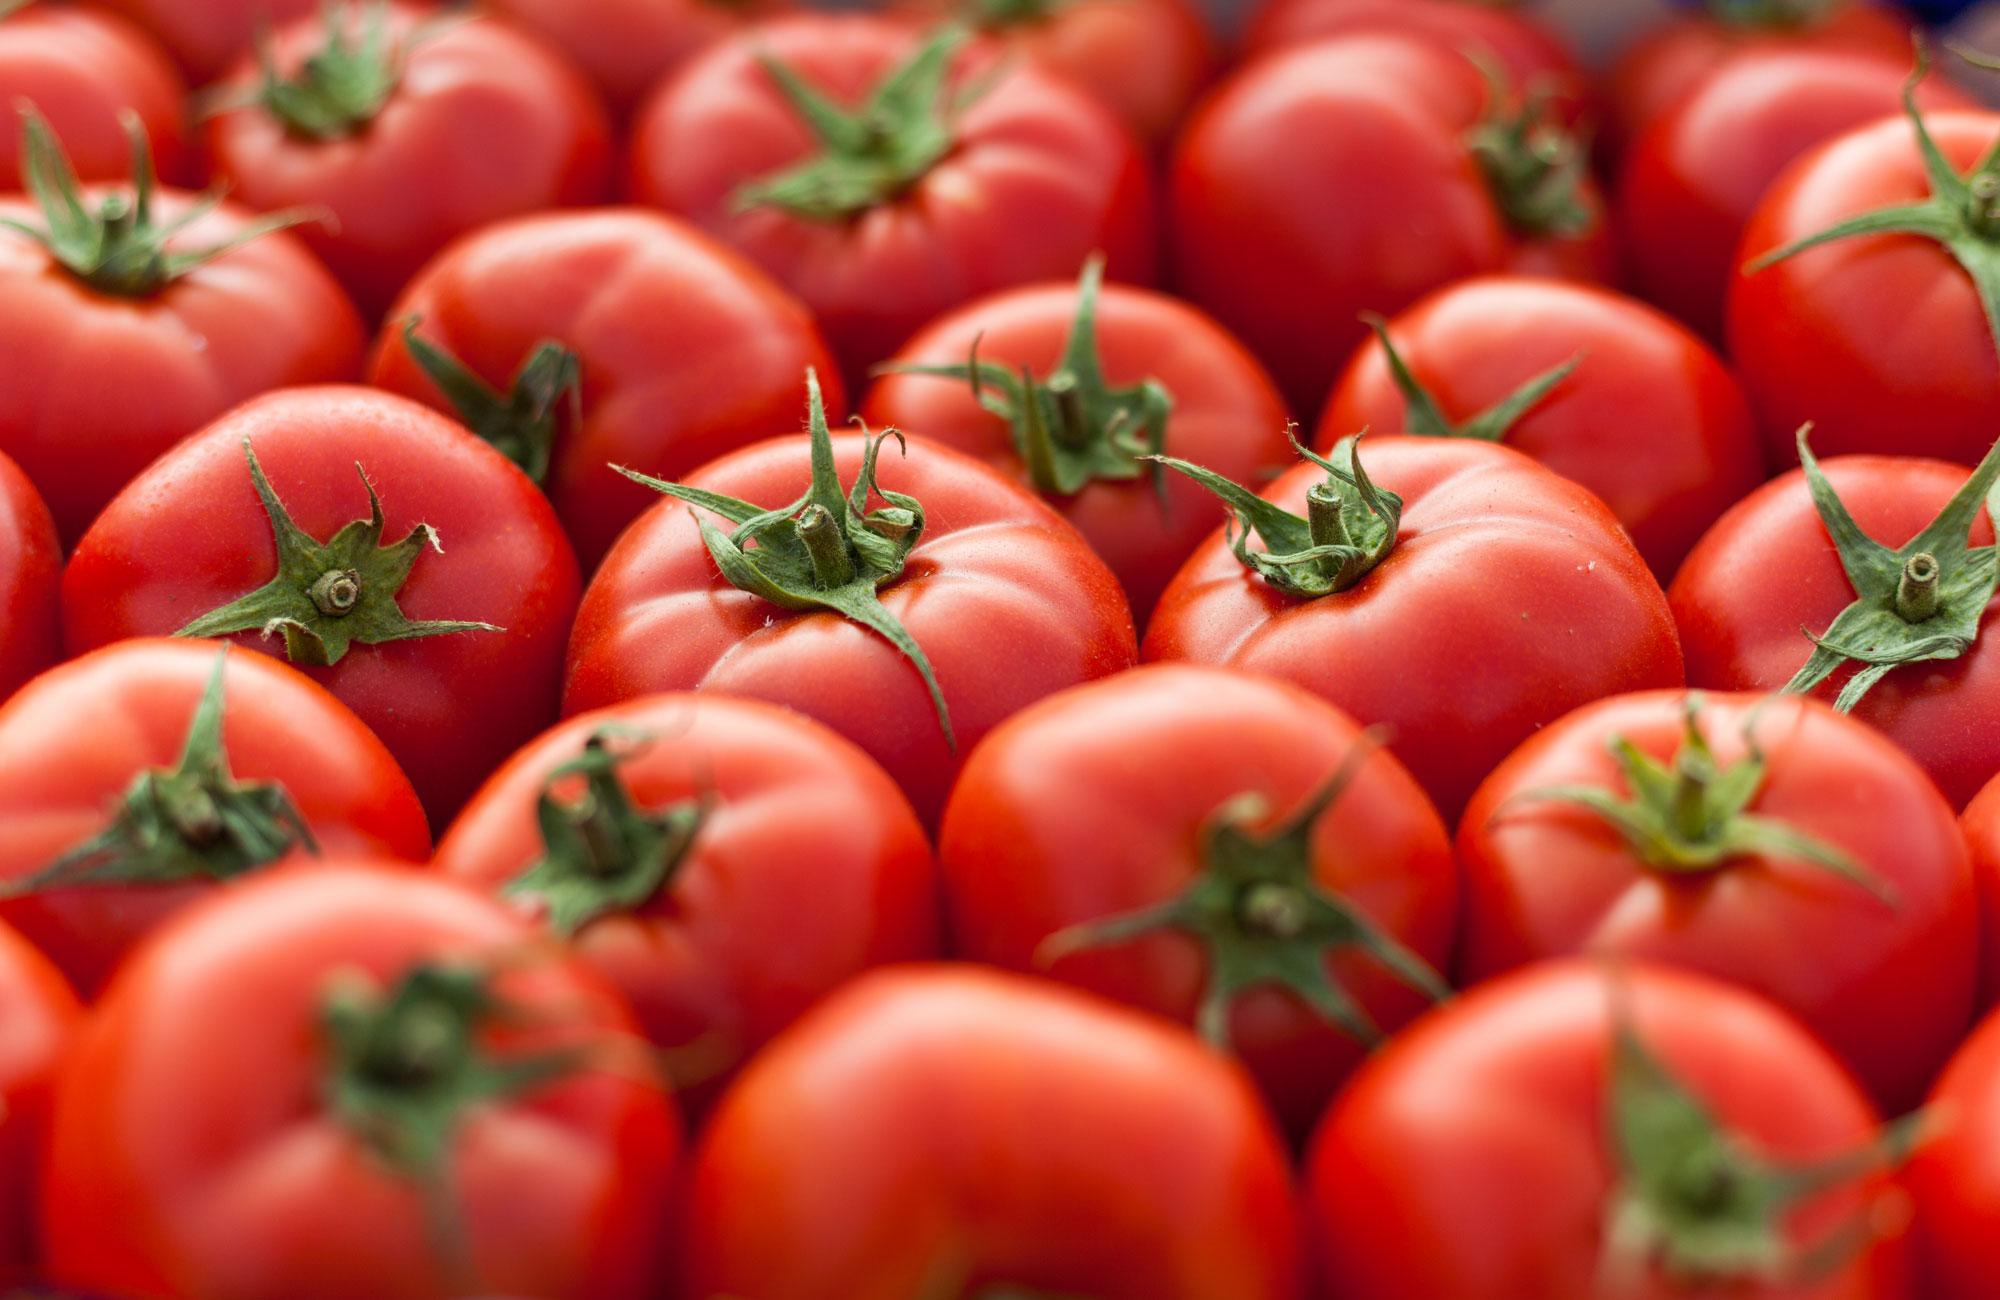 De savoureuses recettes de tomates séchées pour en profiter toute